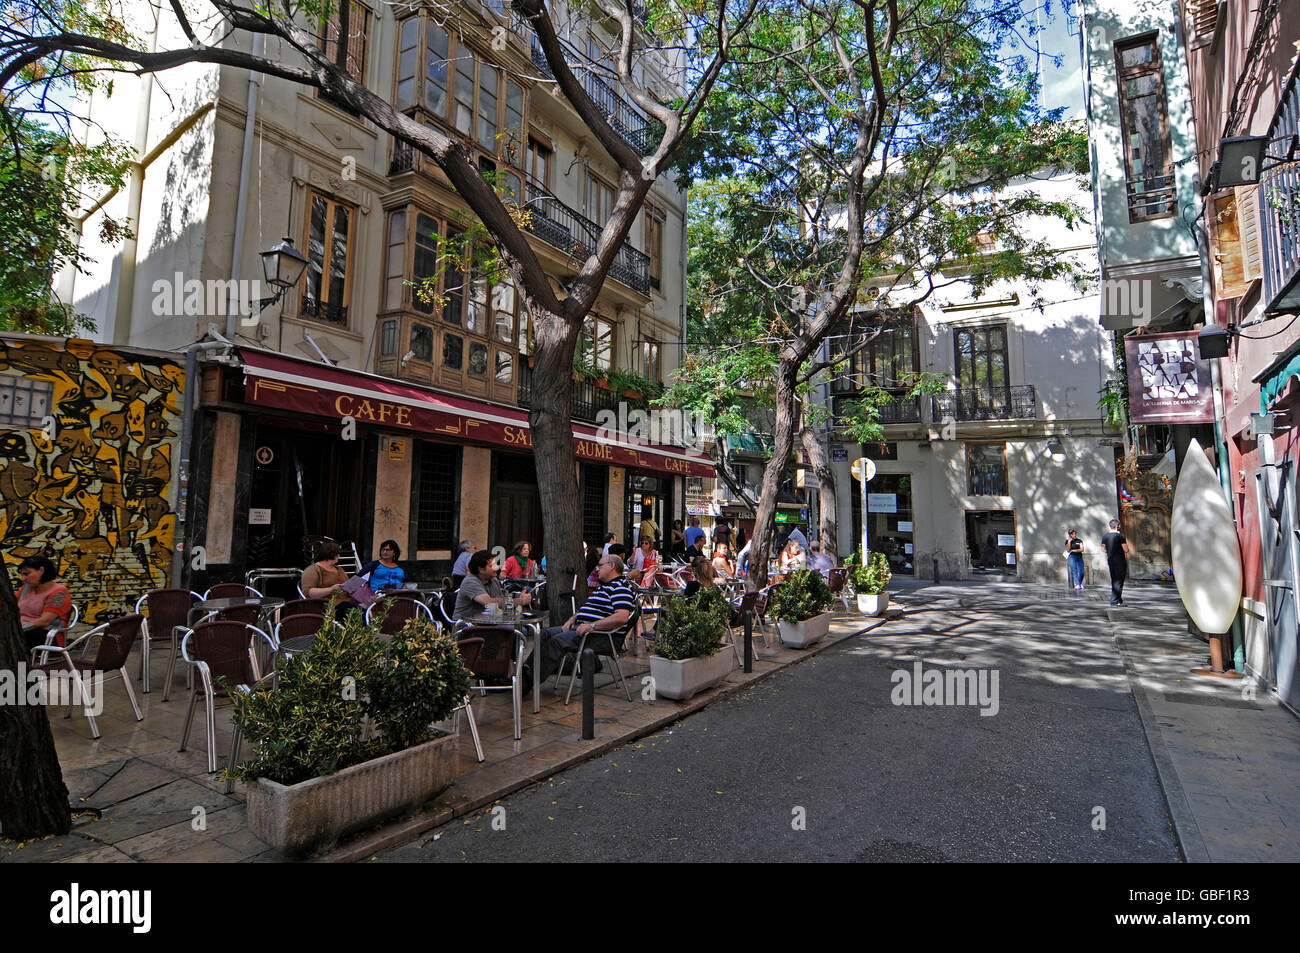 Café de la rue de la chaussée, café, restaurant, le Barrio del Carmen, district, Valencia, Espagne, Europe Banque D'Images